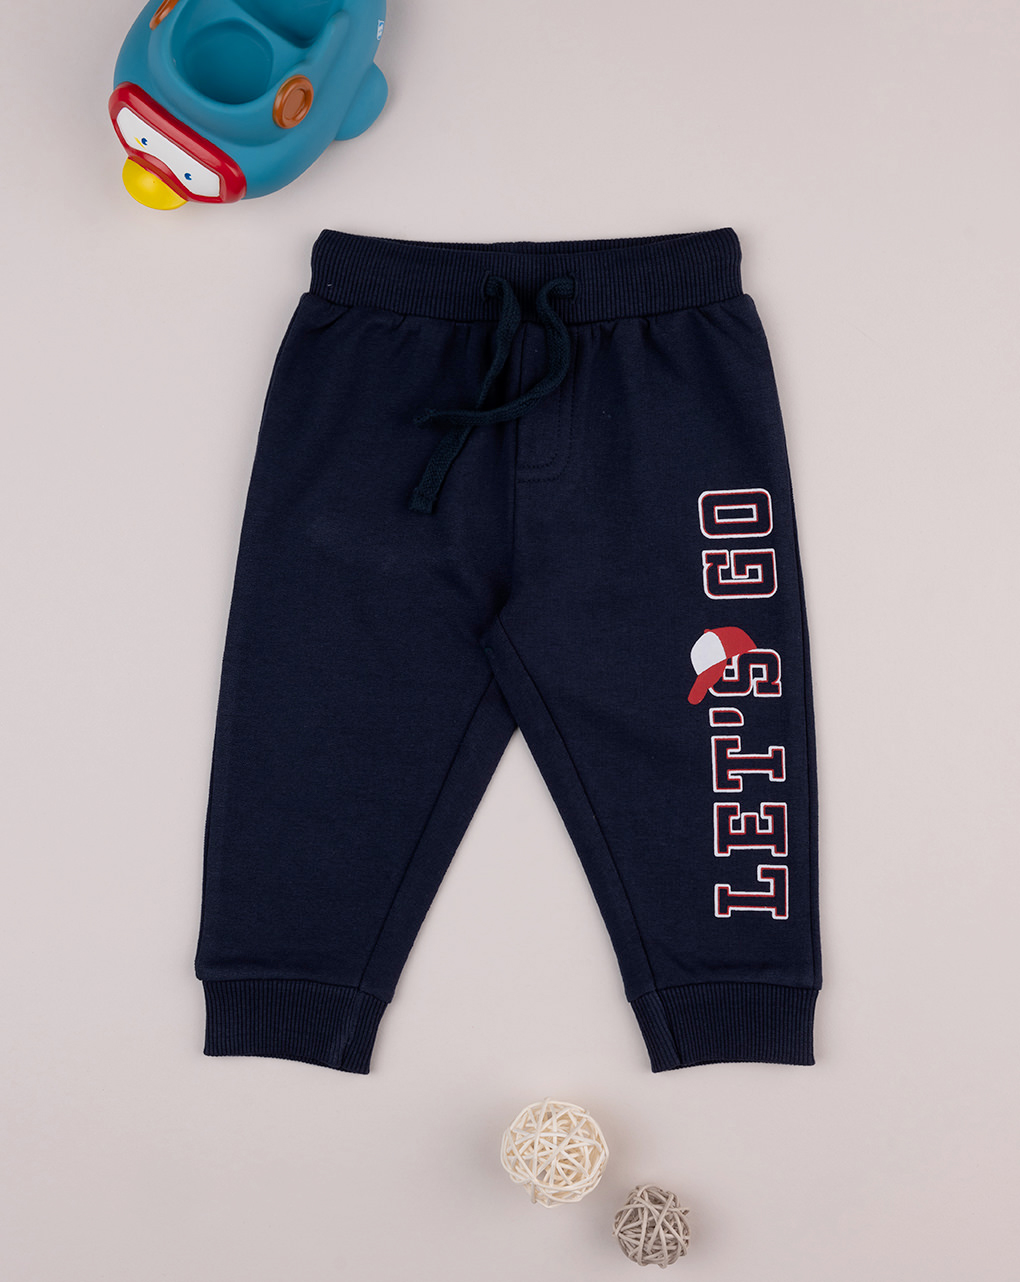 βρεφικό παντελόνι φούτερ μπλε με baseball για αγόρι - Prénatal